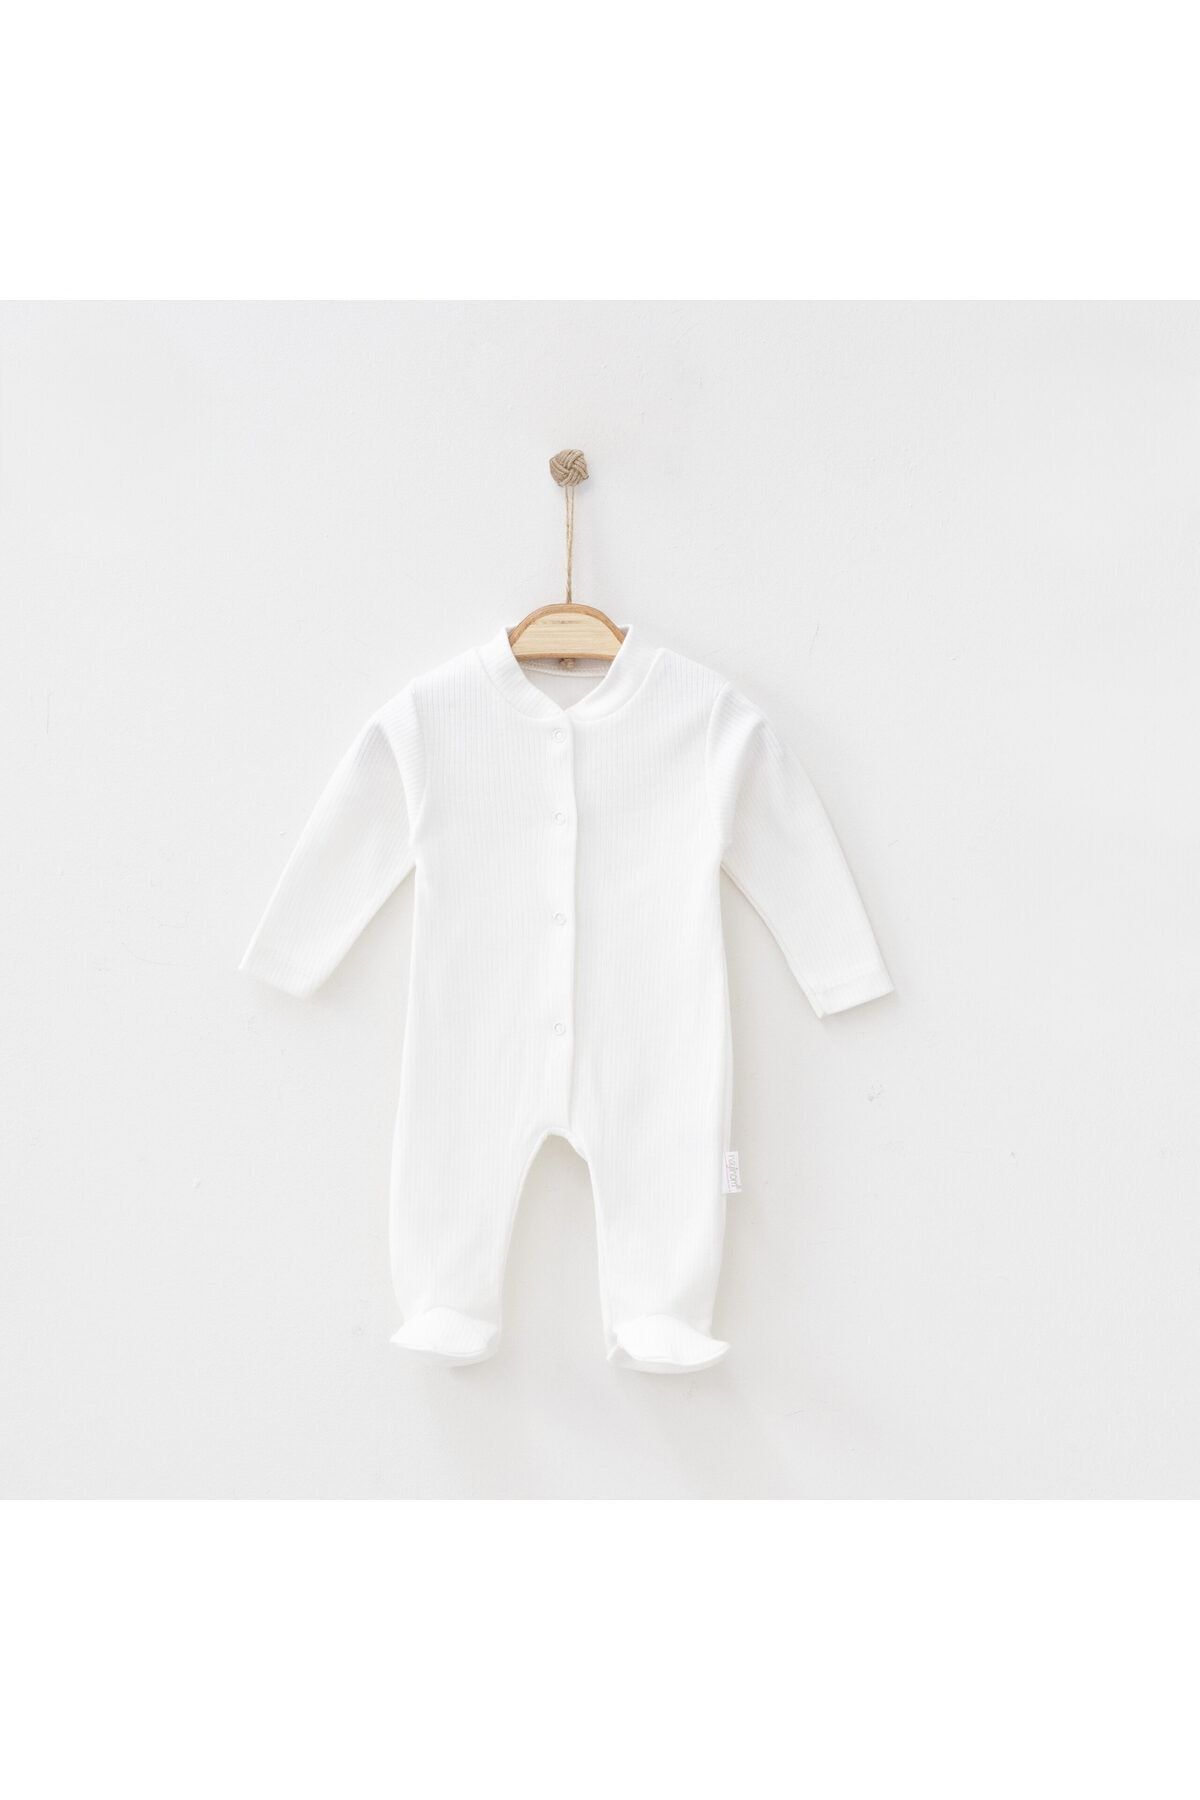 Bebekcim Bir Anne Gülümsemesi Unisex Yumuşak Dokulu Bebek Kıyafeti Çizgili Erkek - Kız Bebek Beyaz Tulum 0-6 Ay